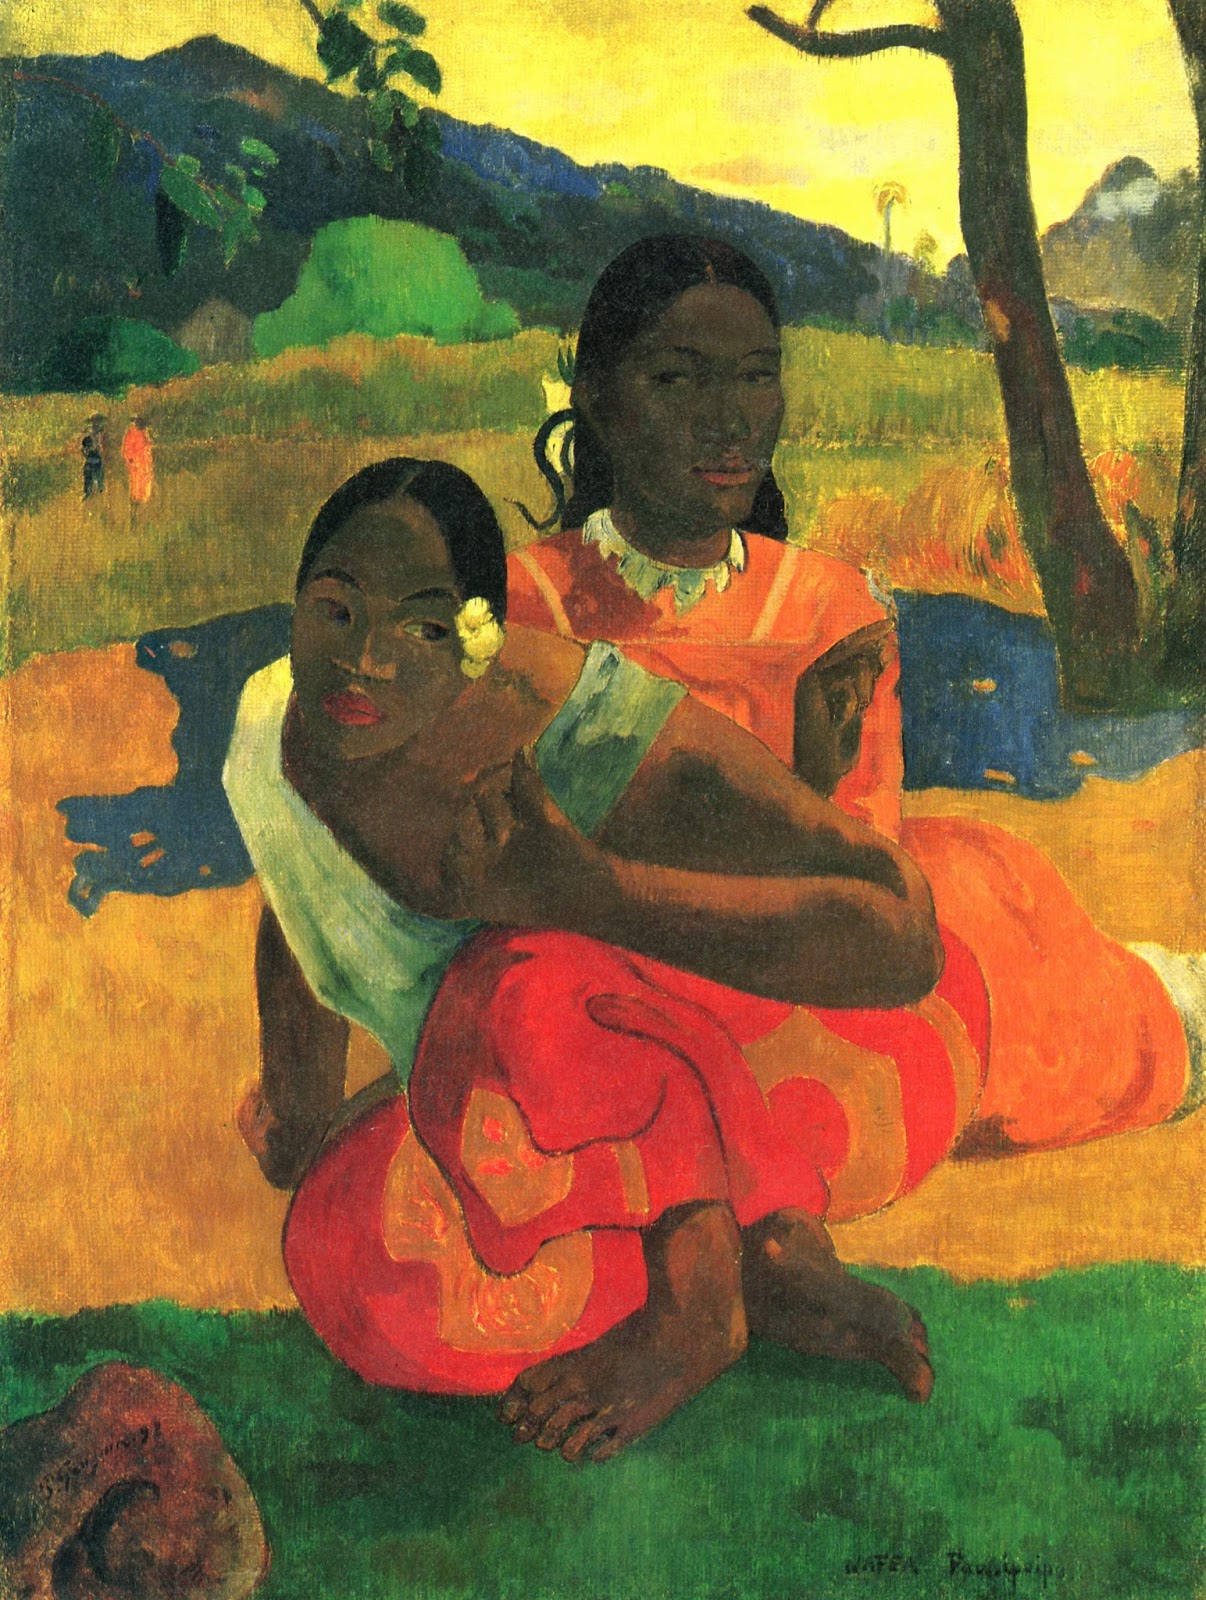 Paul+Gauguin-1848-1903 (386).jpg